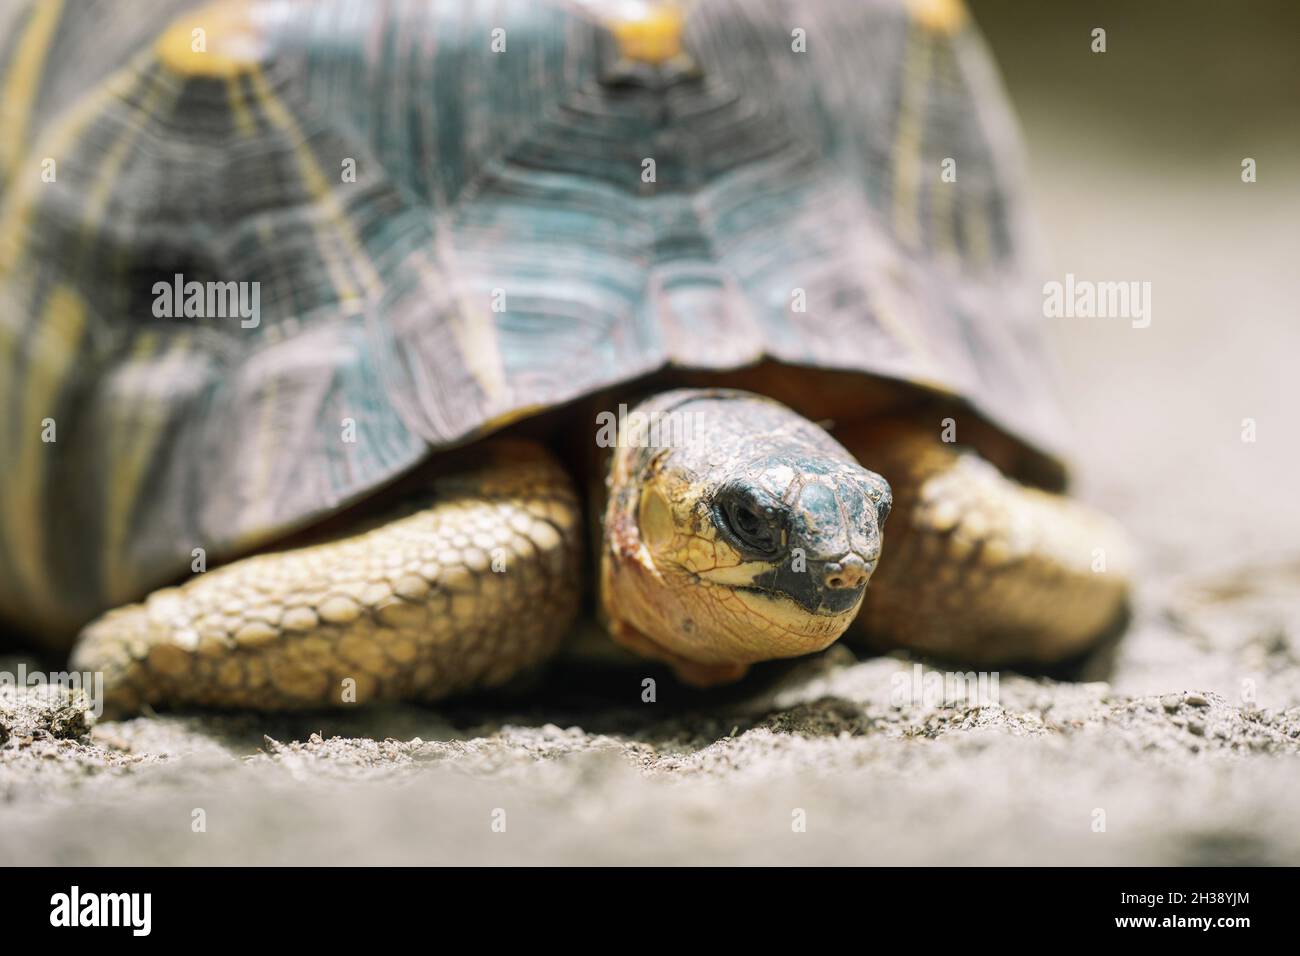 Primo piano della tartaruga irradiata nel suo habitat sulla terra. Tartaruga bella - specie rare, endemica Madagascar. Concetto di animali tropicali esotici. Foto Stock